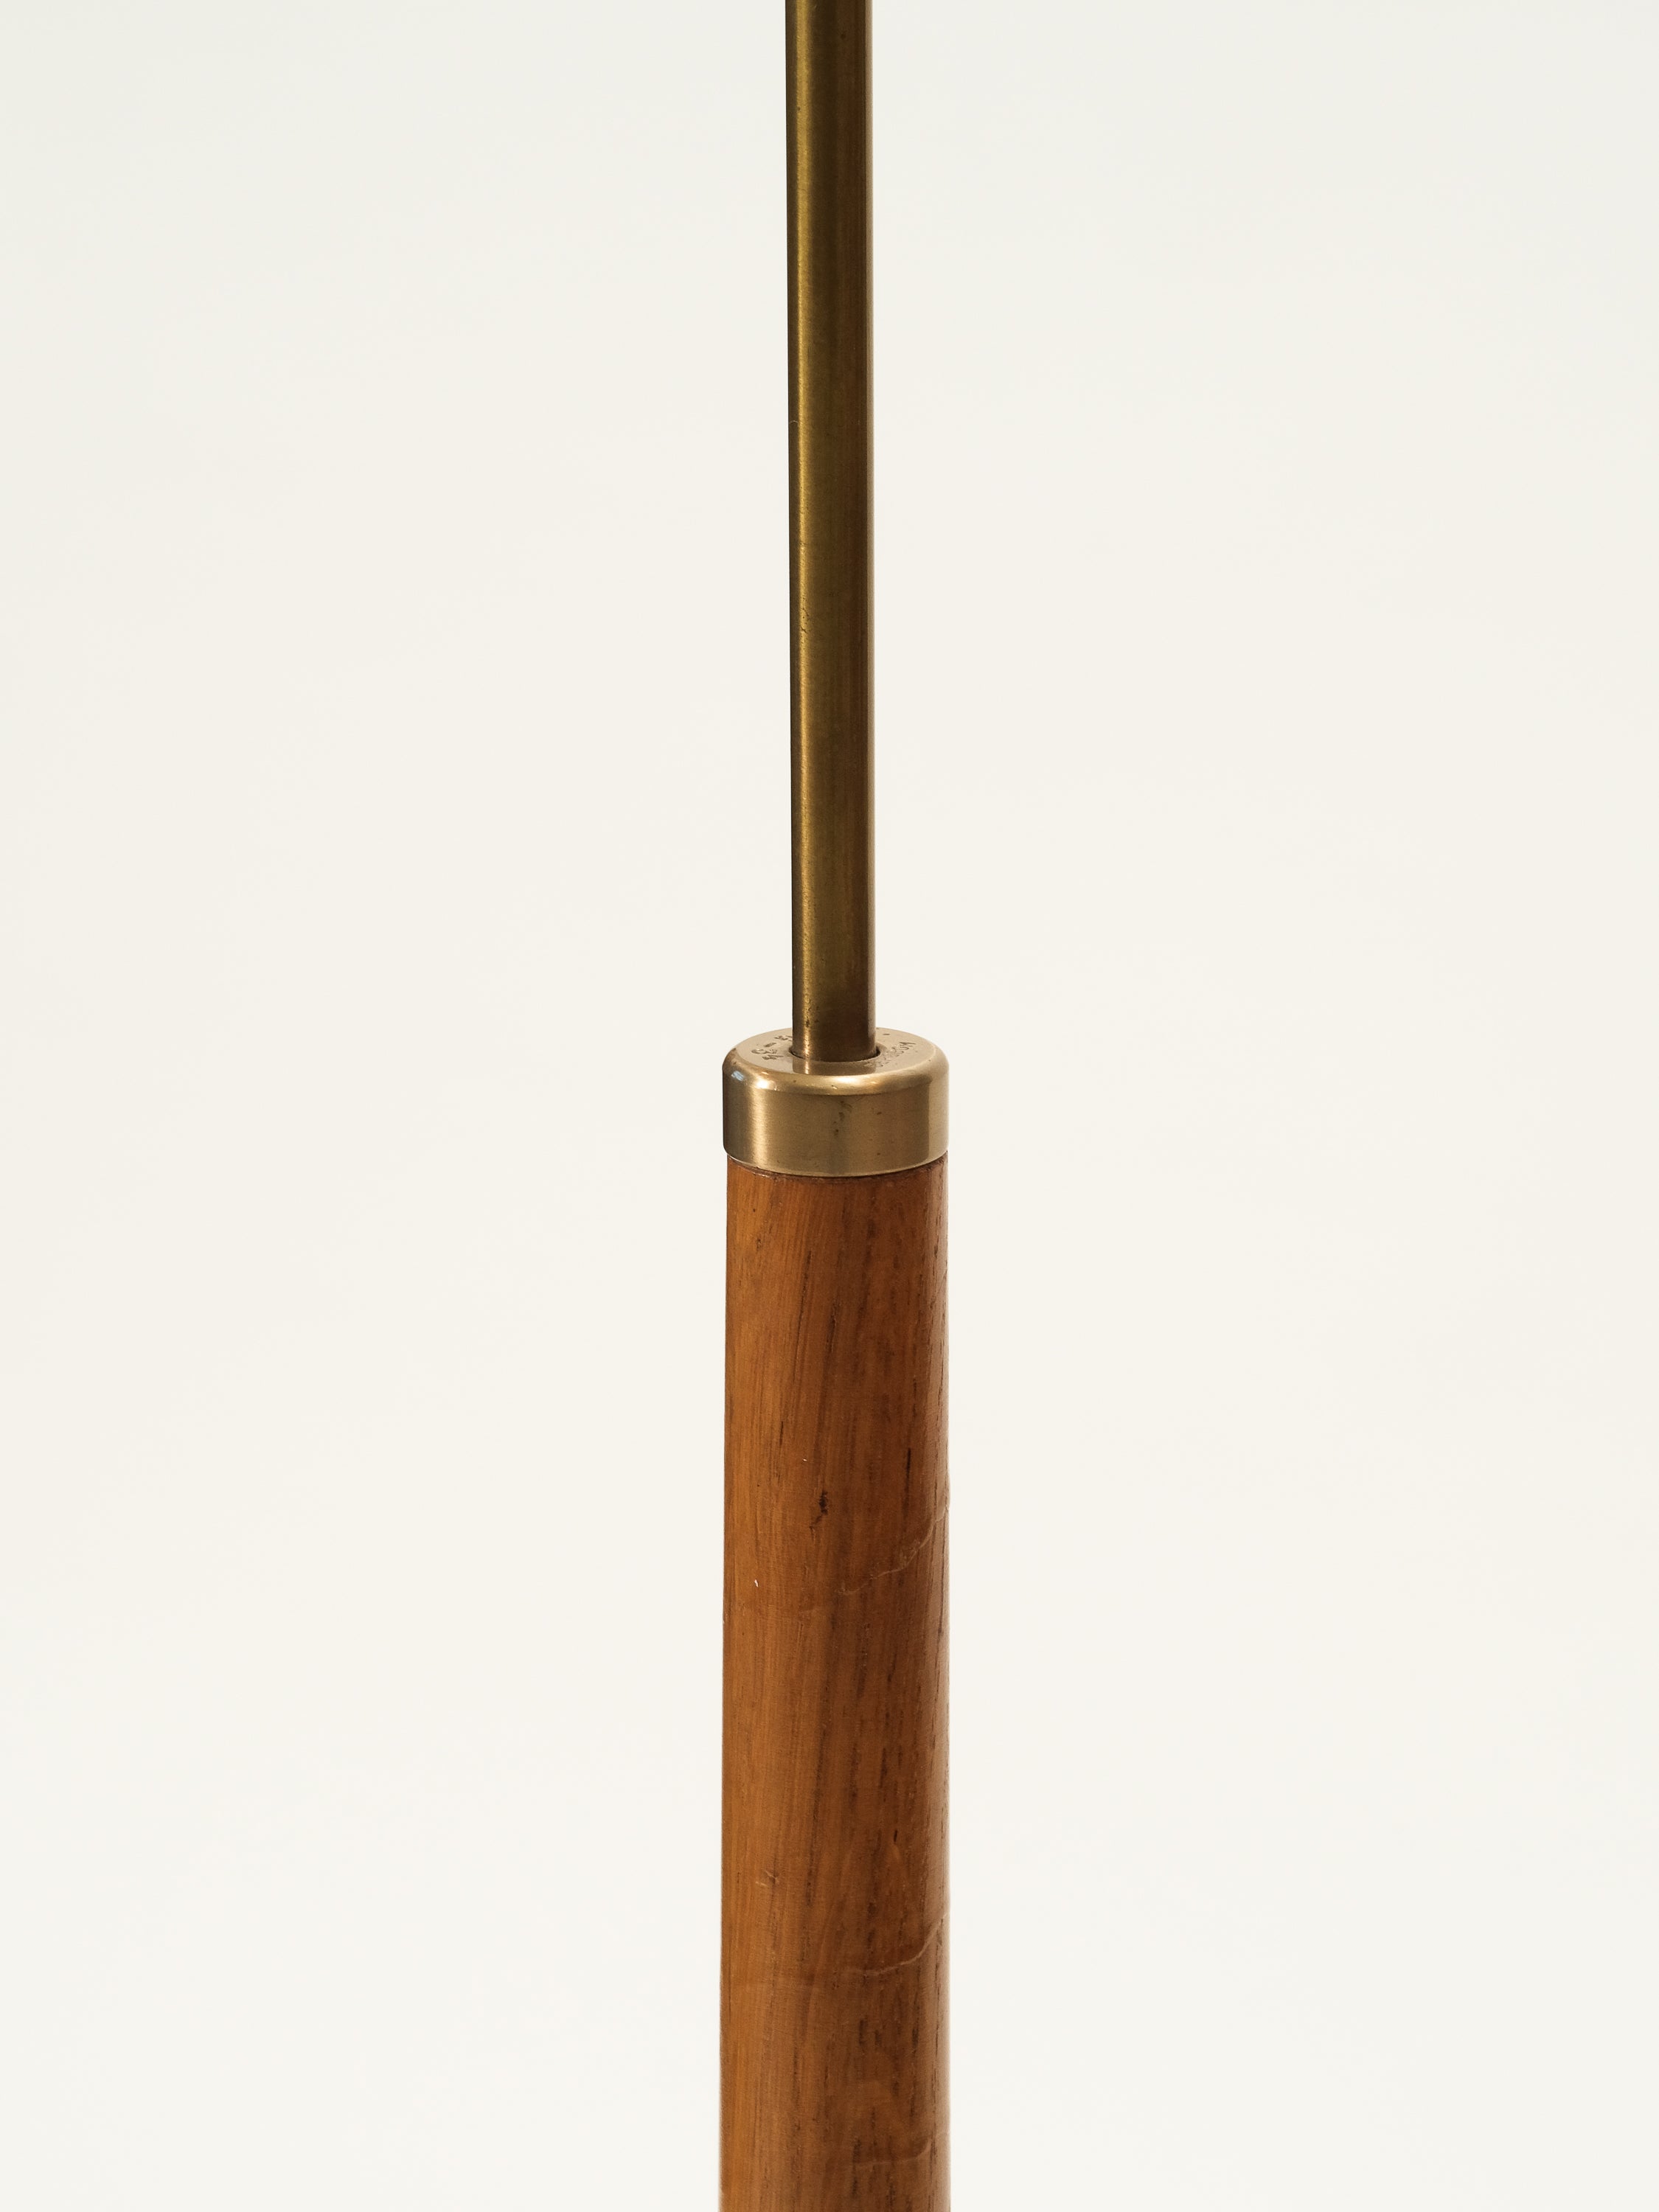 Oak & Brass Rocket Floor Lamp Model G-34 by Bergboms, 1950s